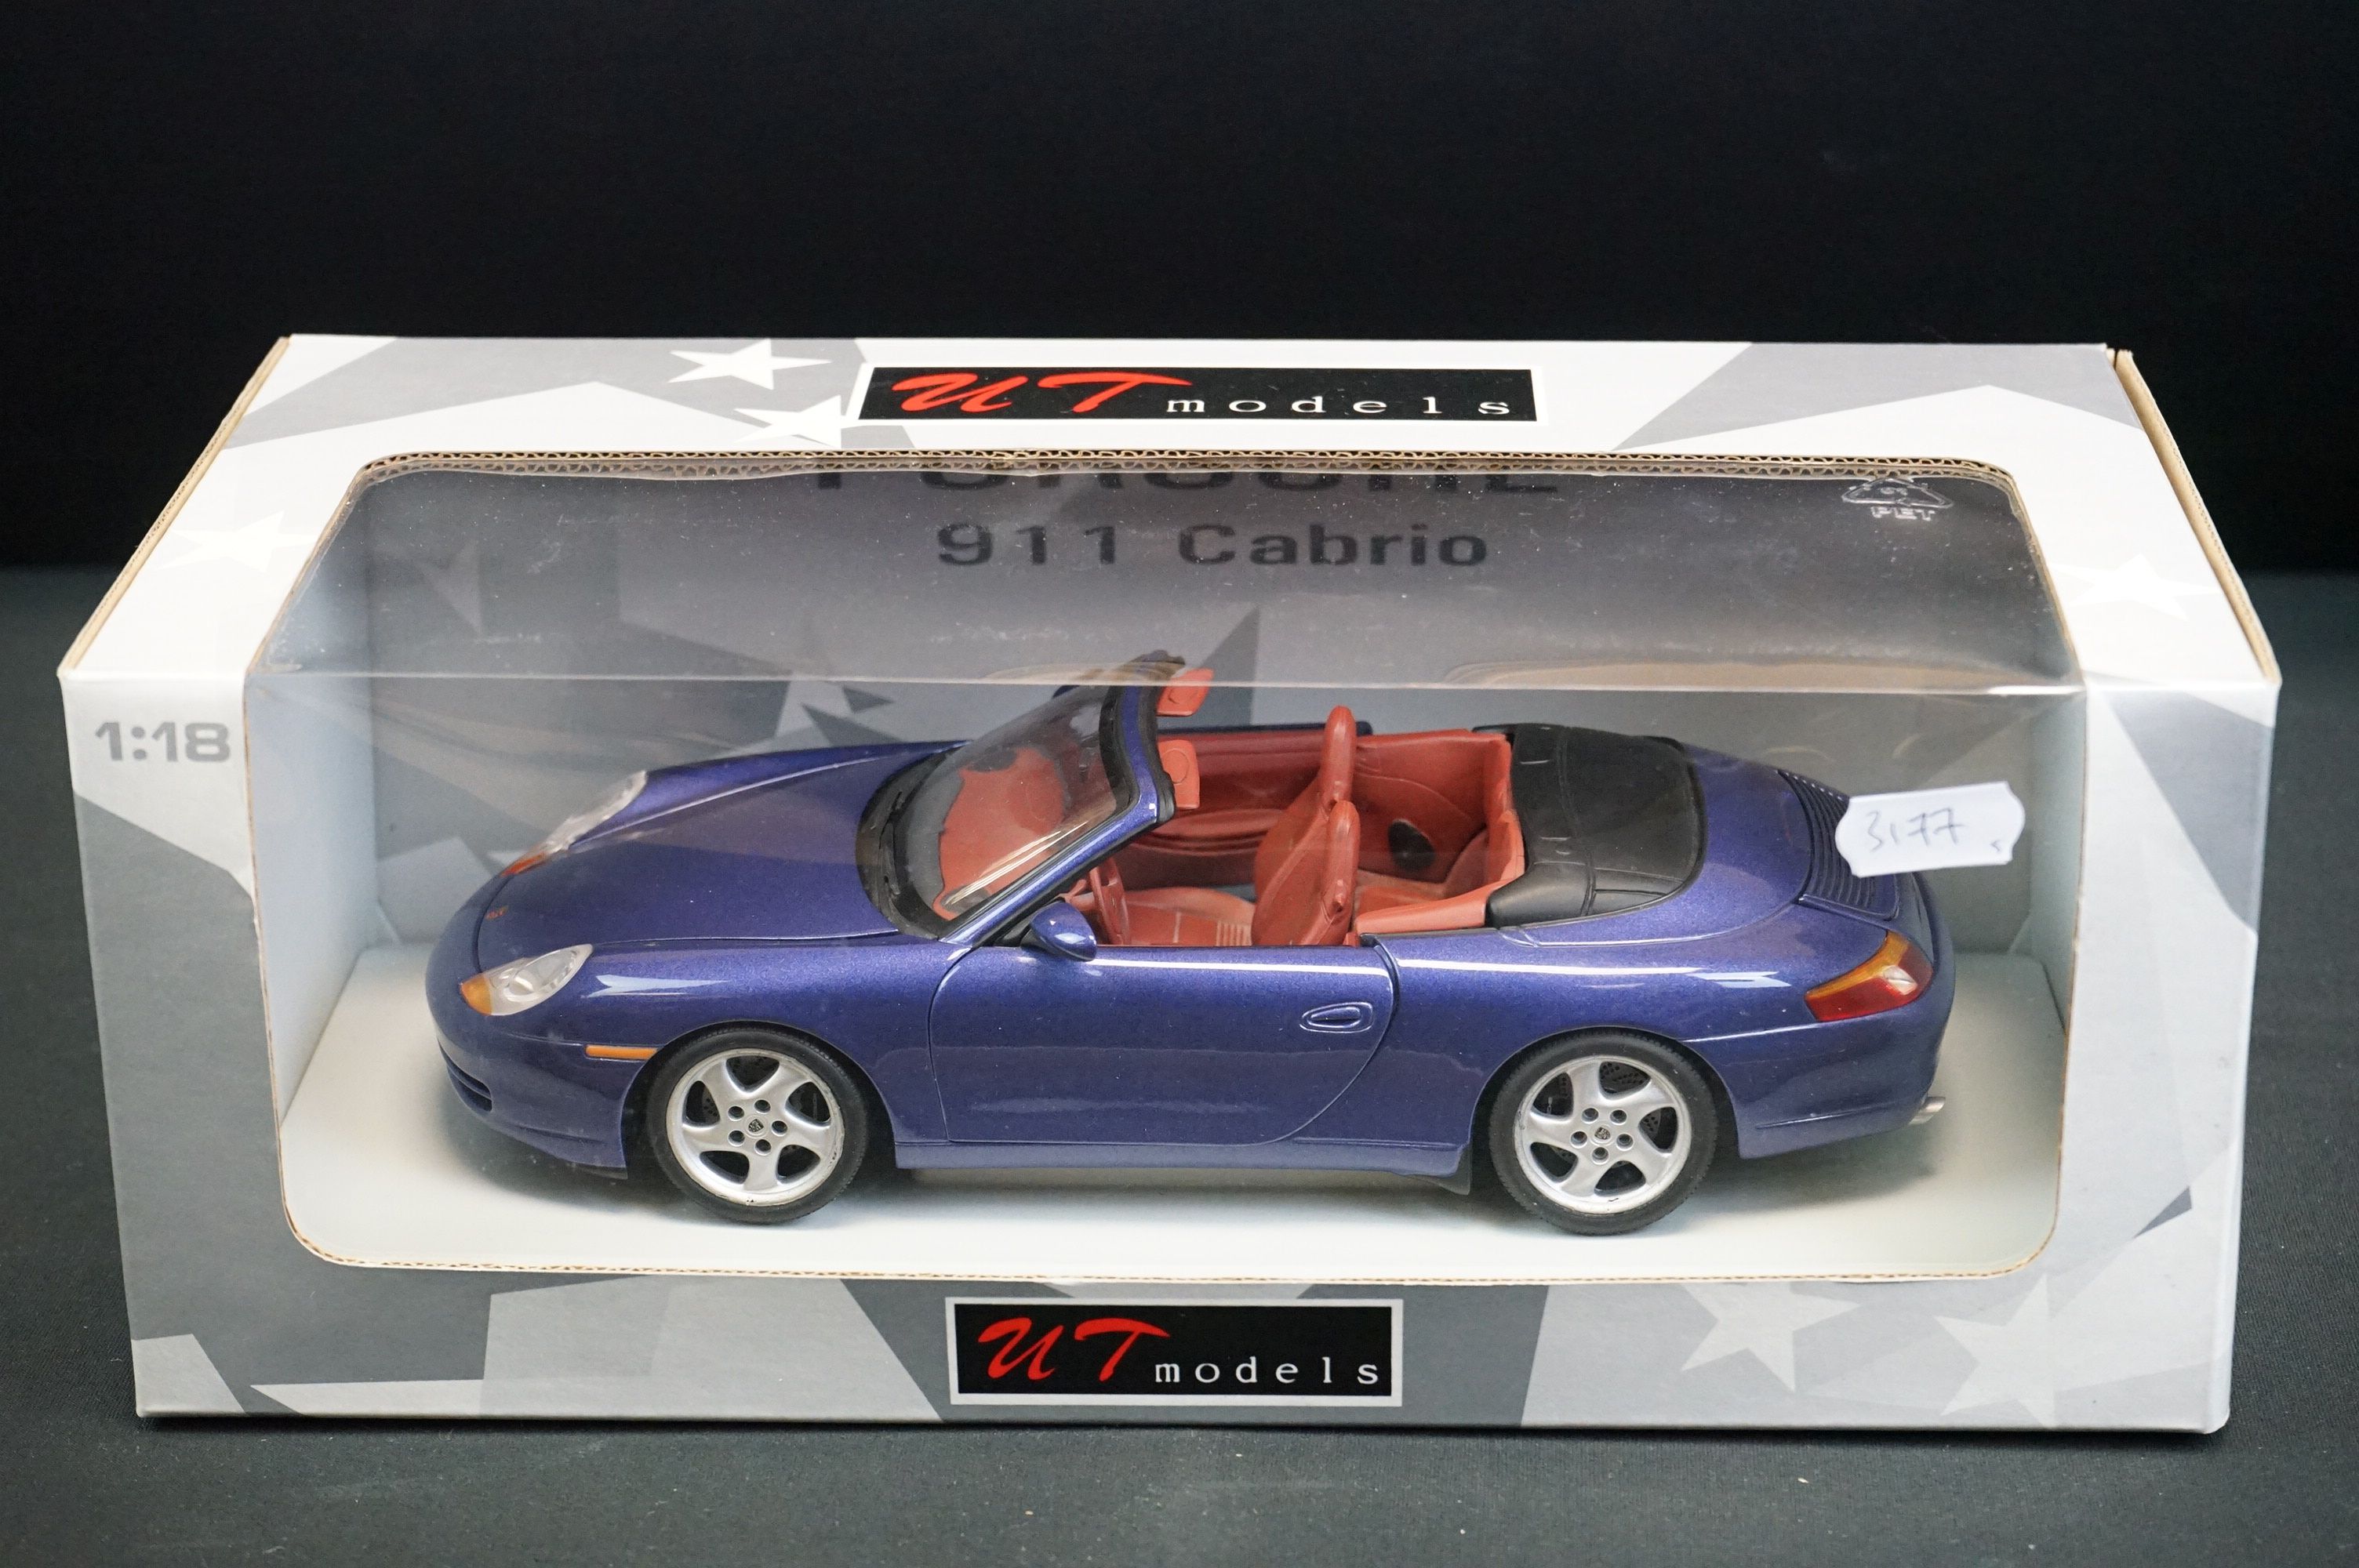 Five boxed 1/18 UT Models diecast models to include Porsche 911 Cabrio, Ferrari F355 Spider, Porsche - Image 3 of 6